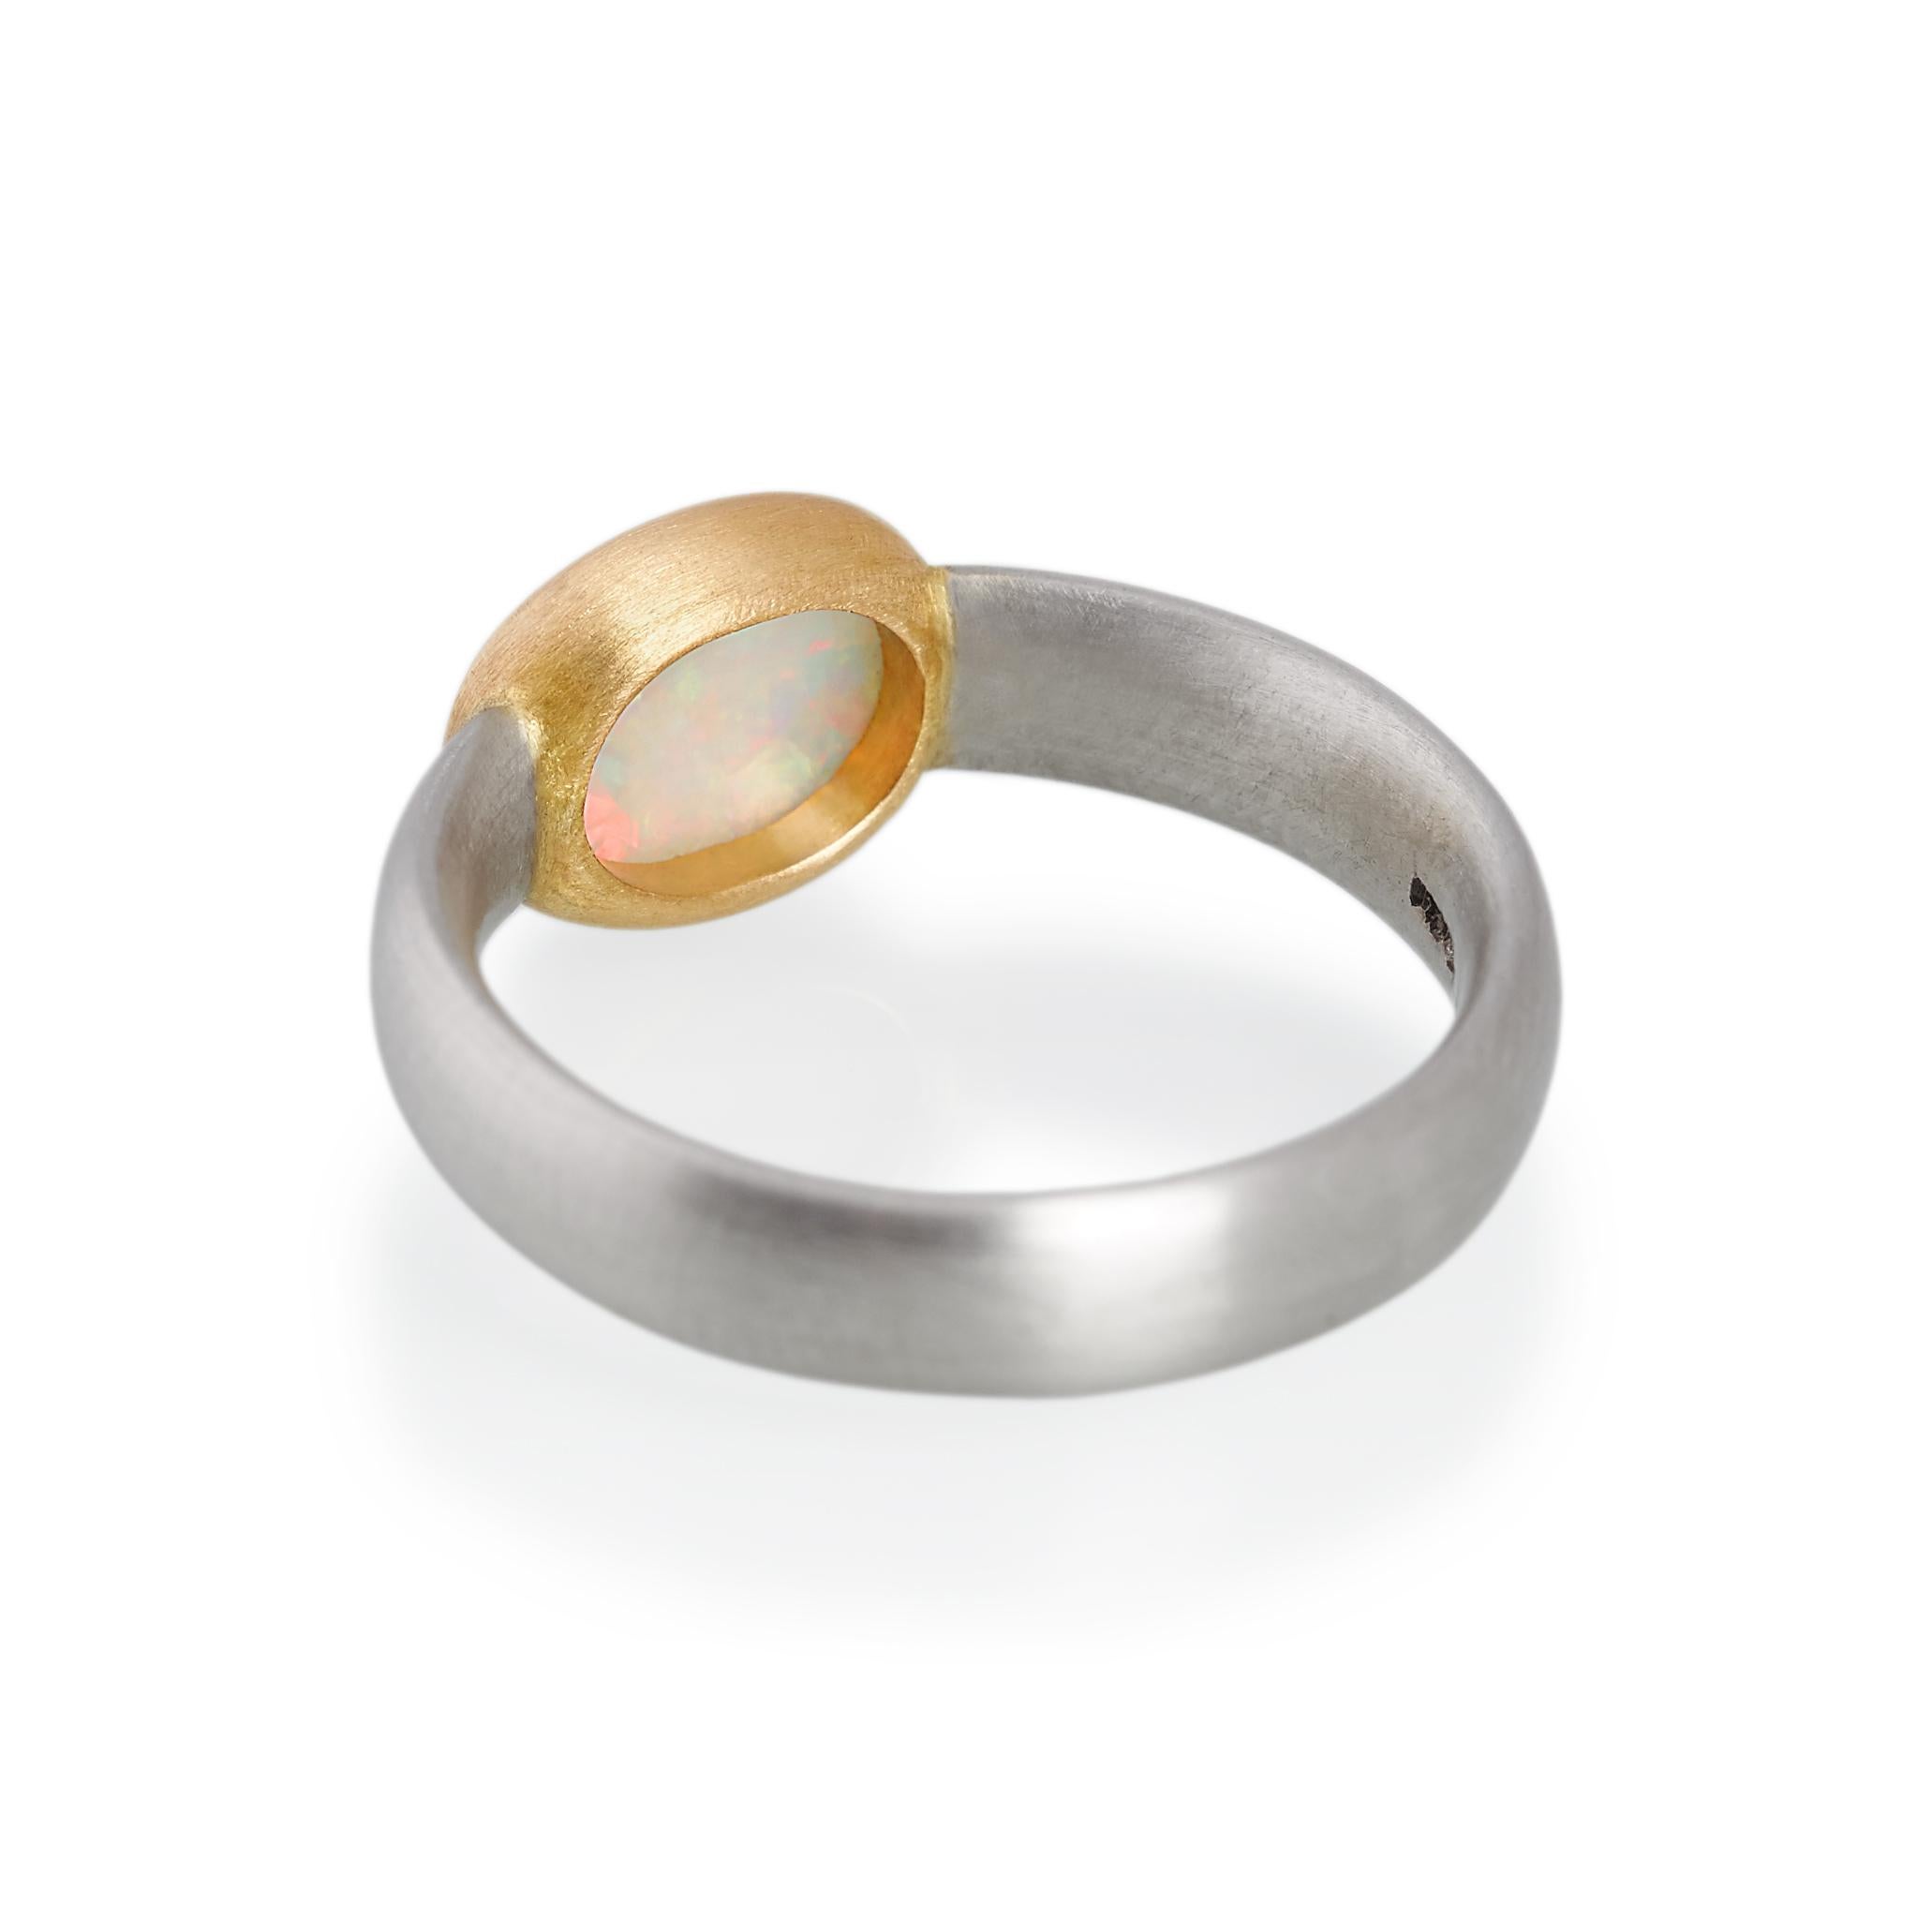 22 carat gold ring for ladies